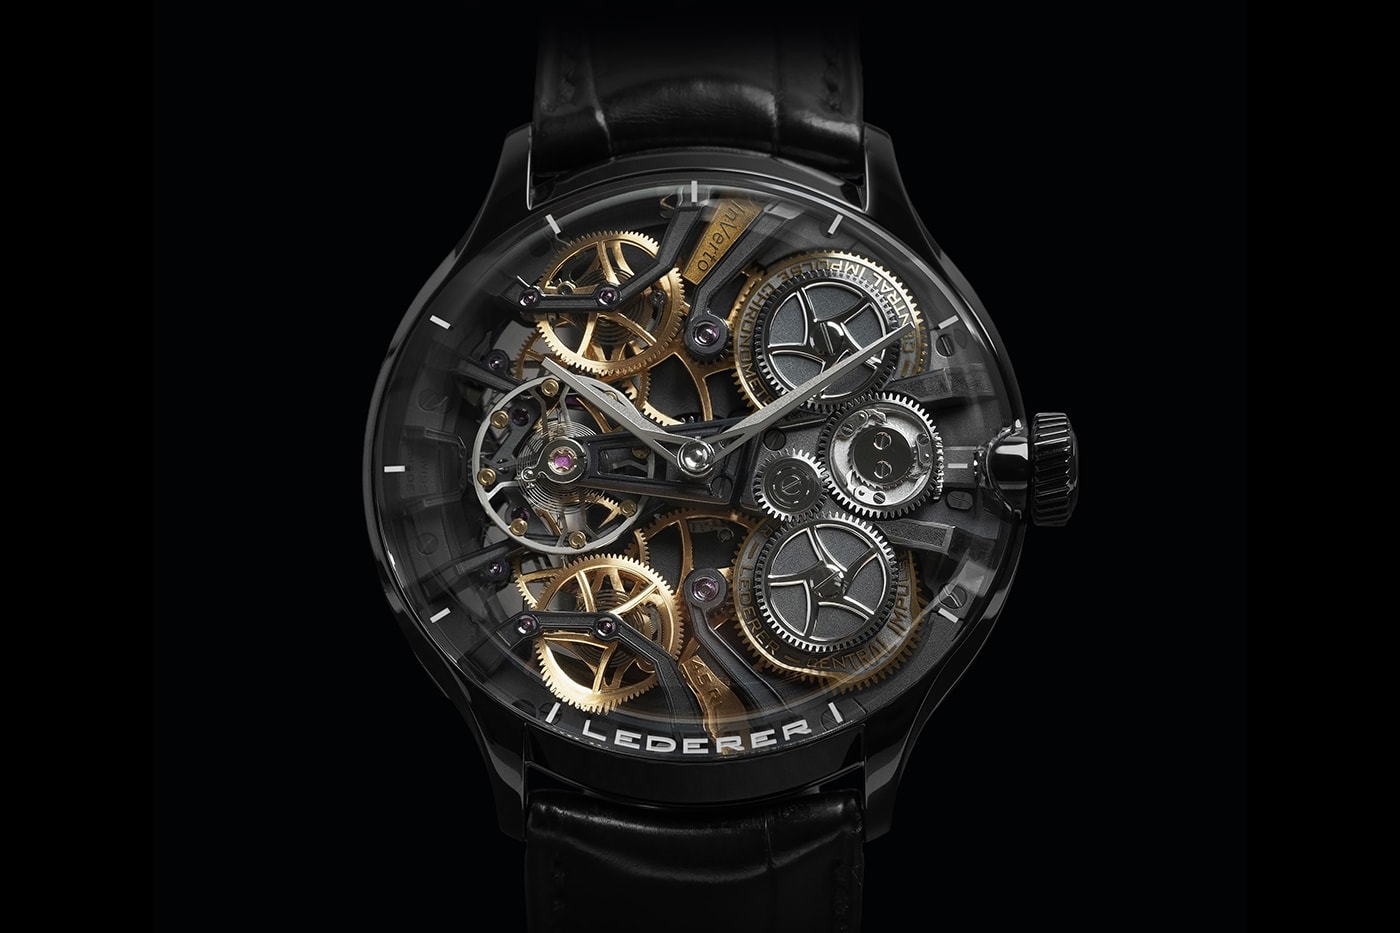 Bernhard Lederer Central Impulse Chronometer InVerto Limited Series Info